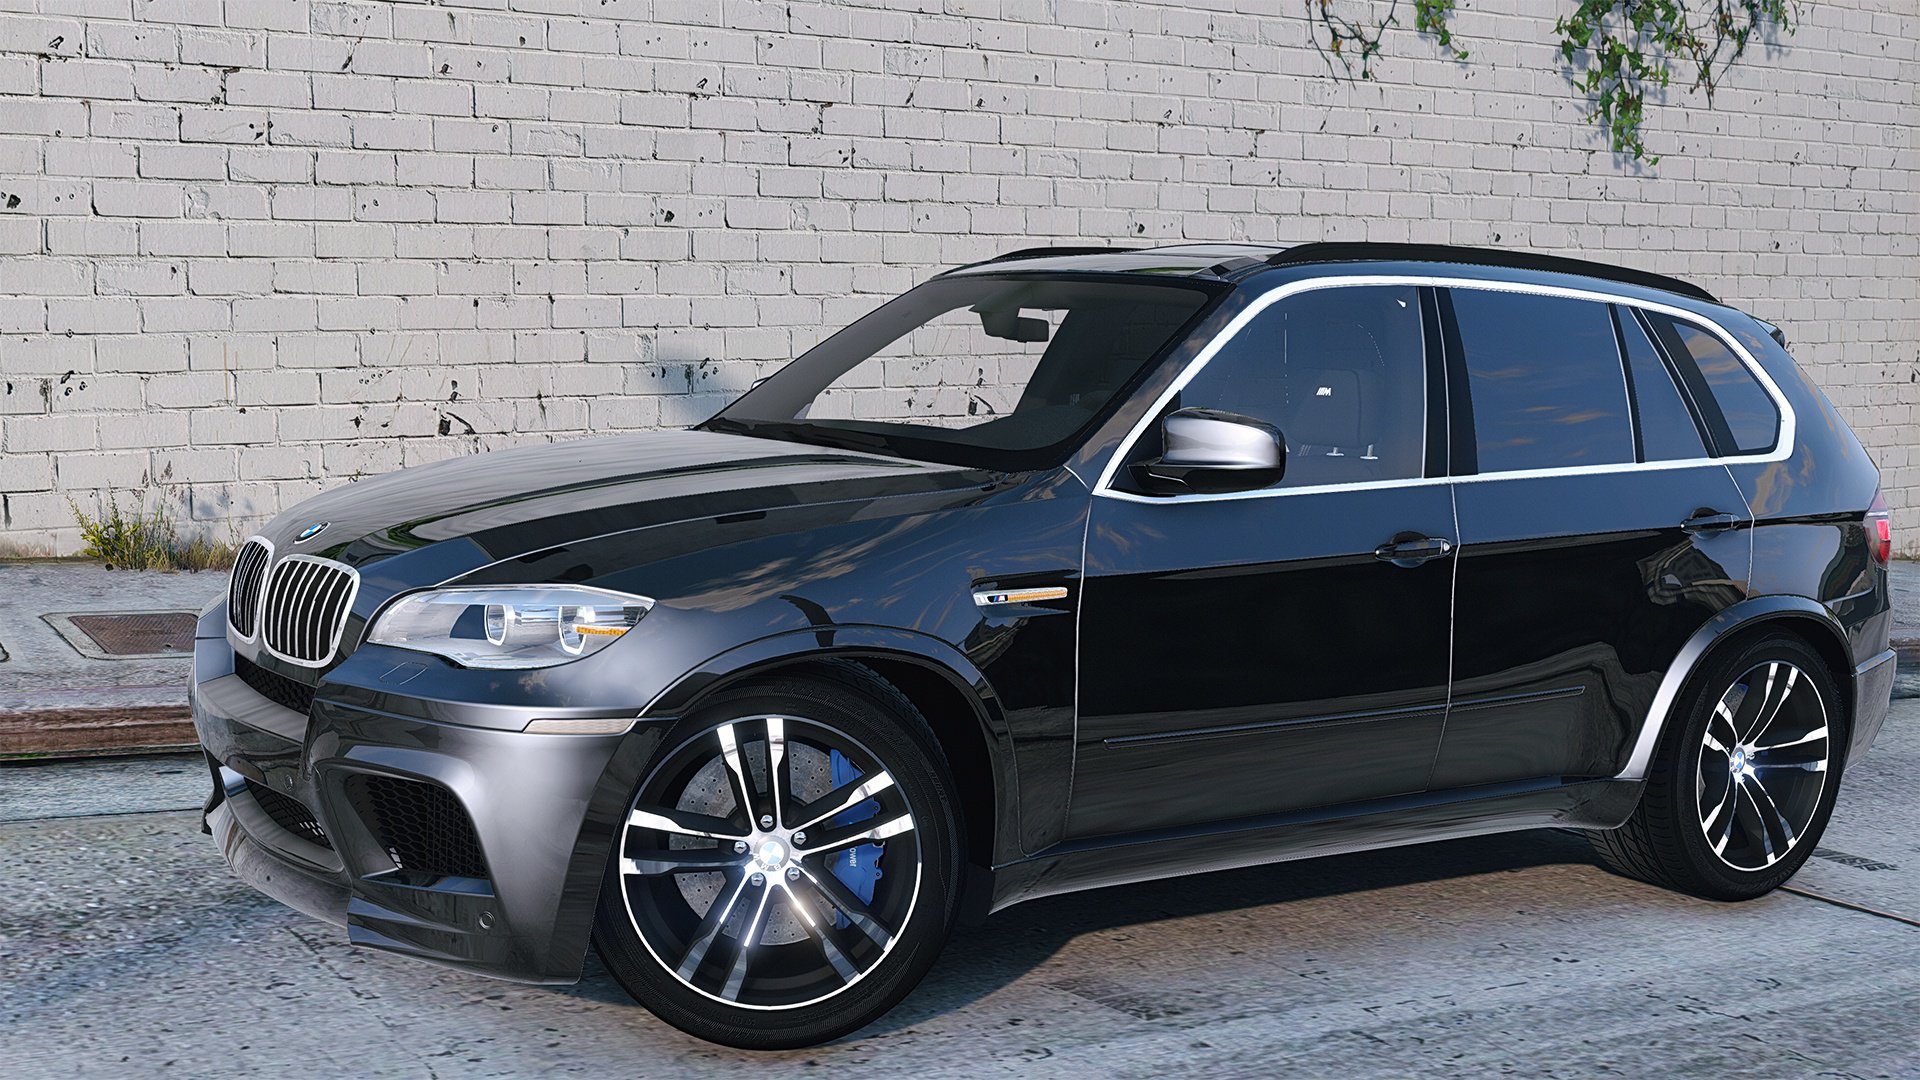 BMW X5M 2013 v1.1 for GTA 5